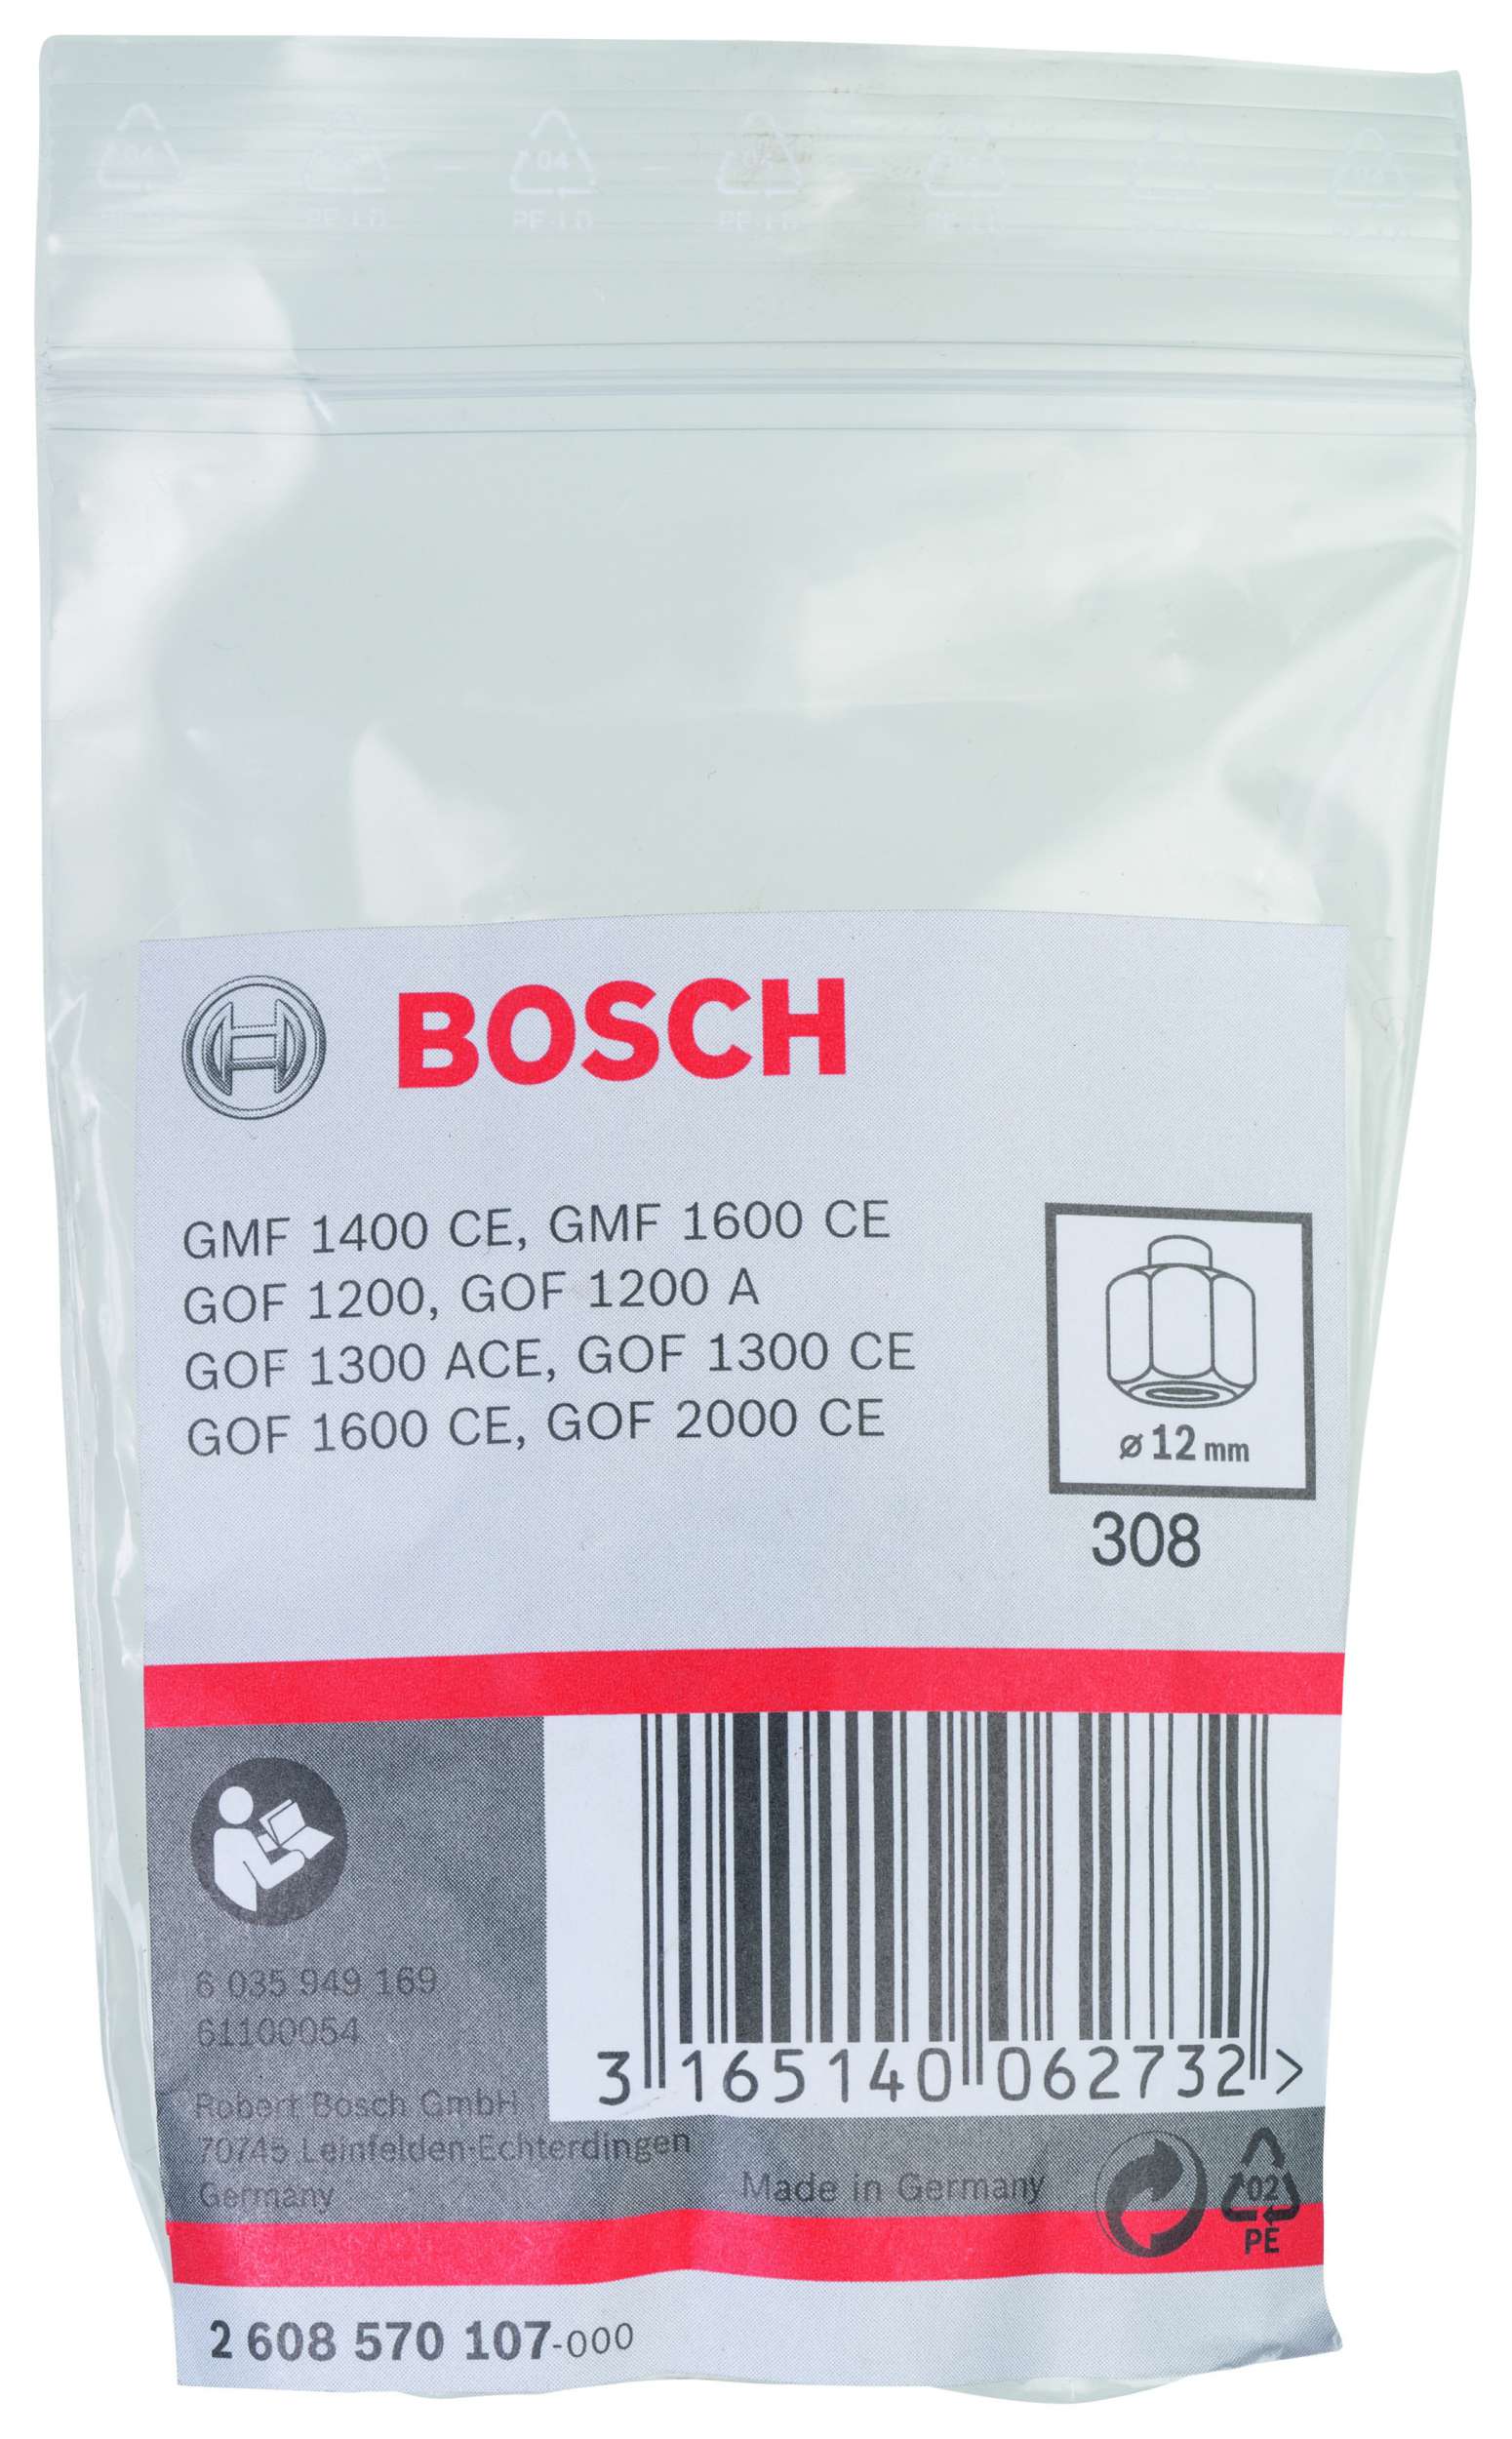 Bosch - 12 mm cap 24 mm Anahtar Genisligi Penset